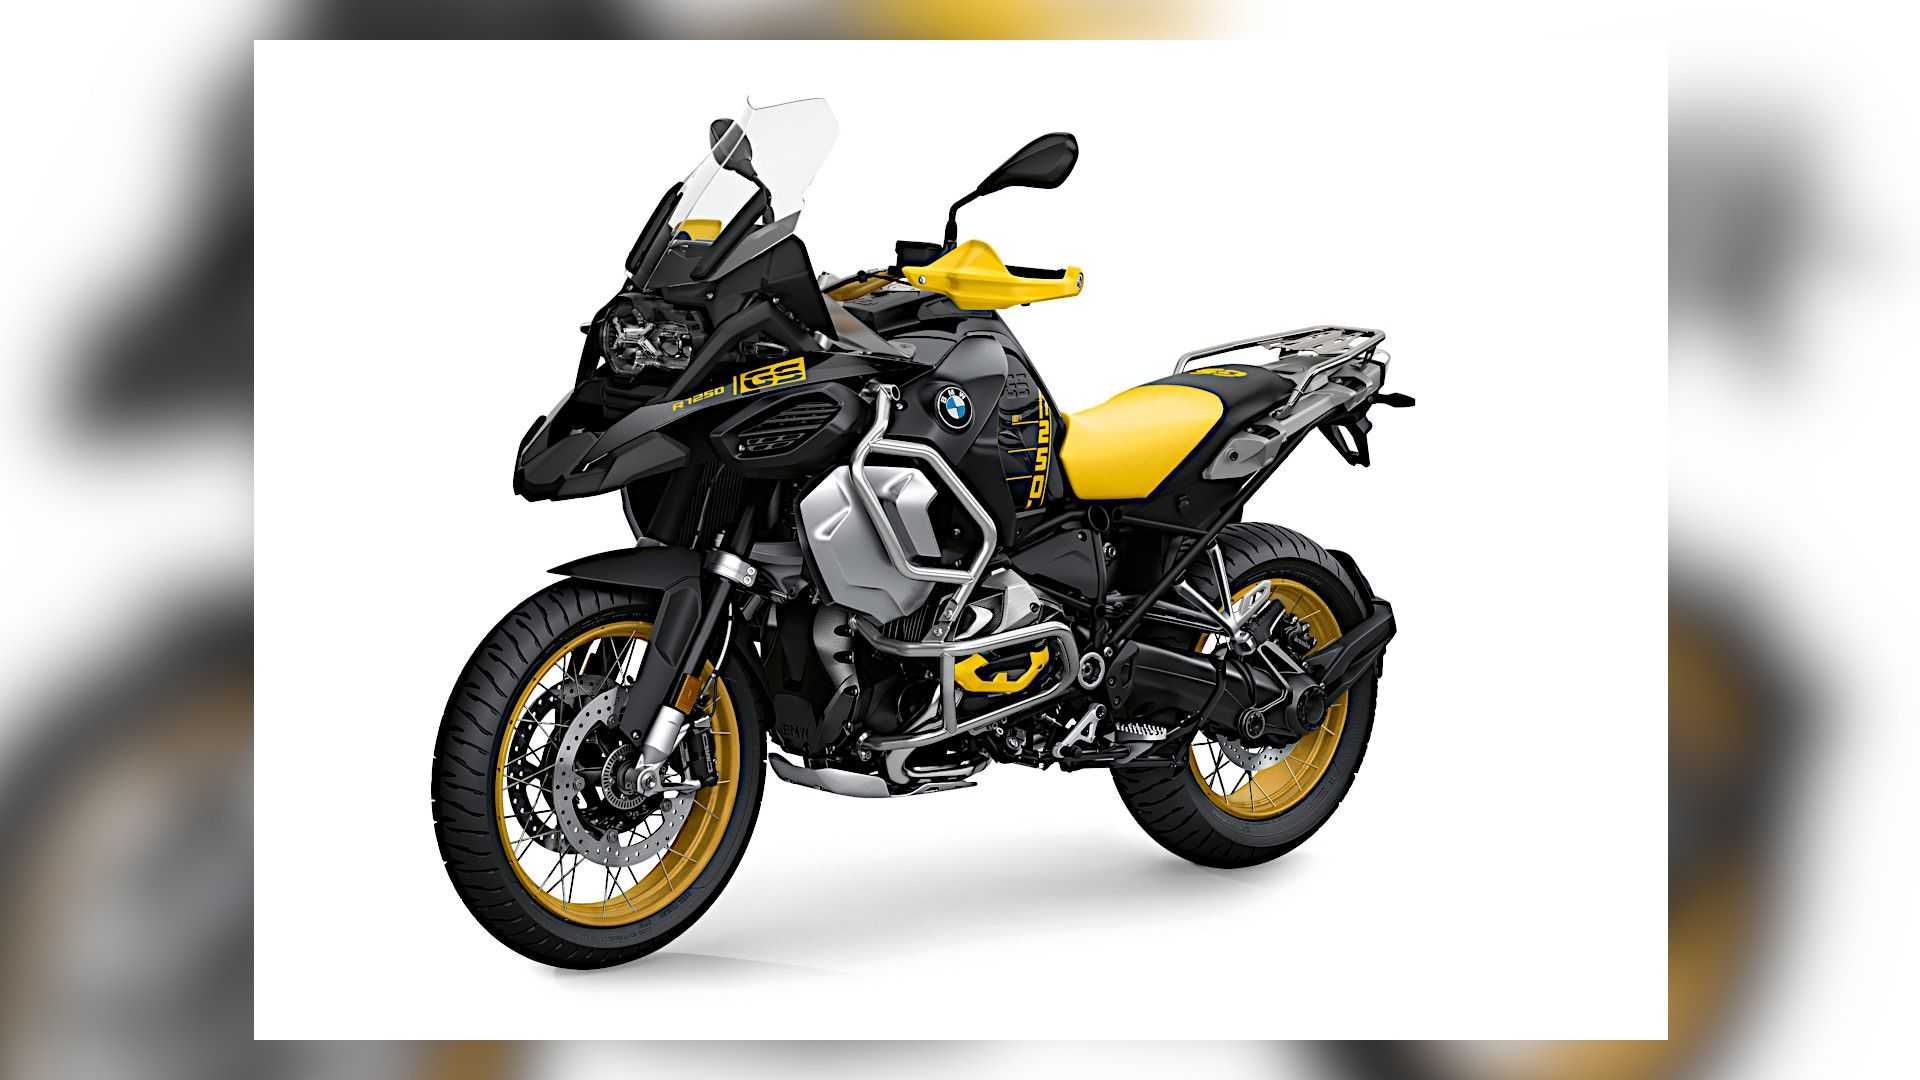 نمای سه چهارم موتورسیکلت بی ام و / 2021 BMW R 1250 GS با رنگ زرد و سیاه